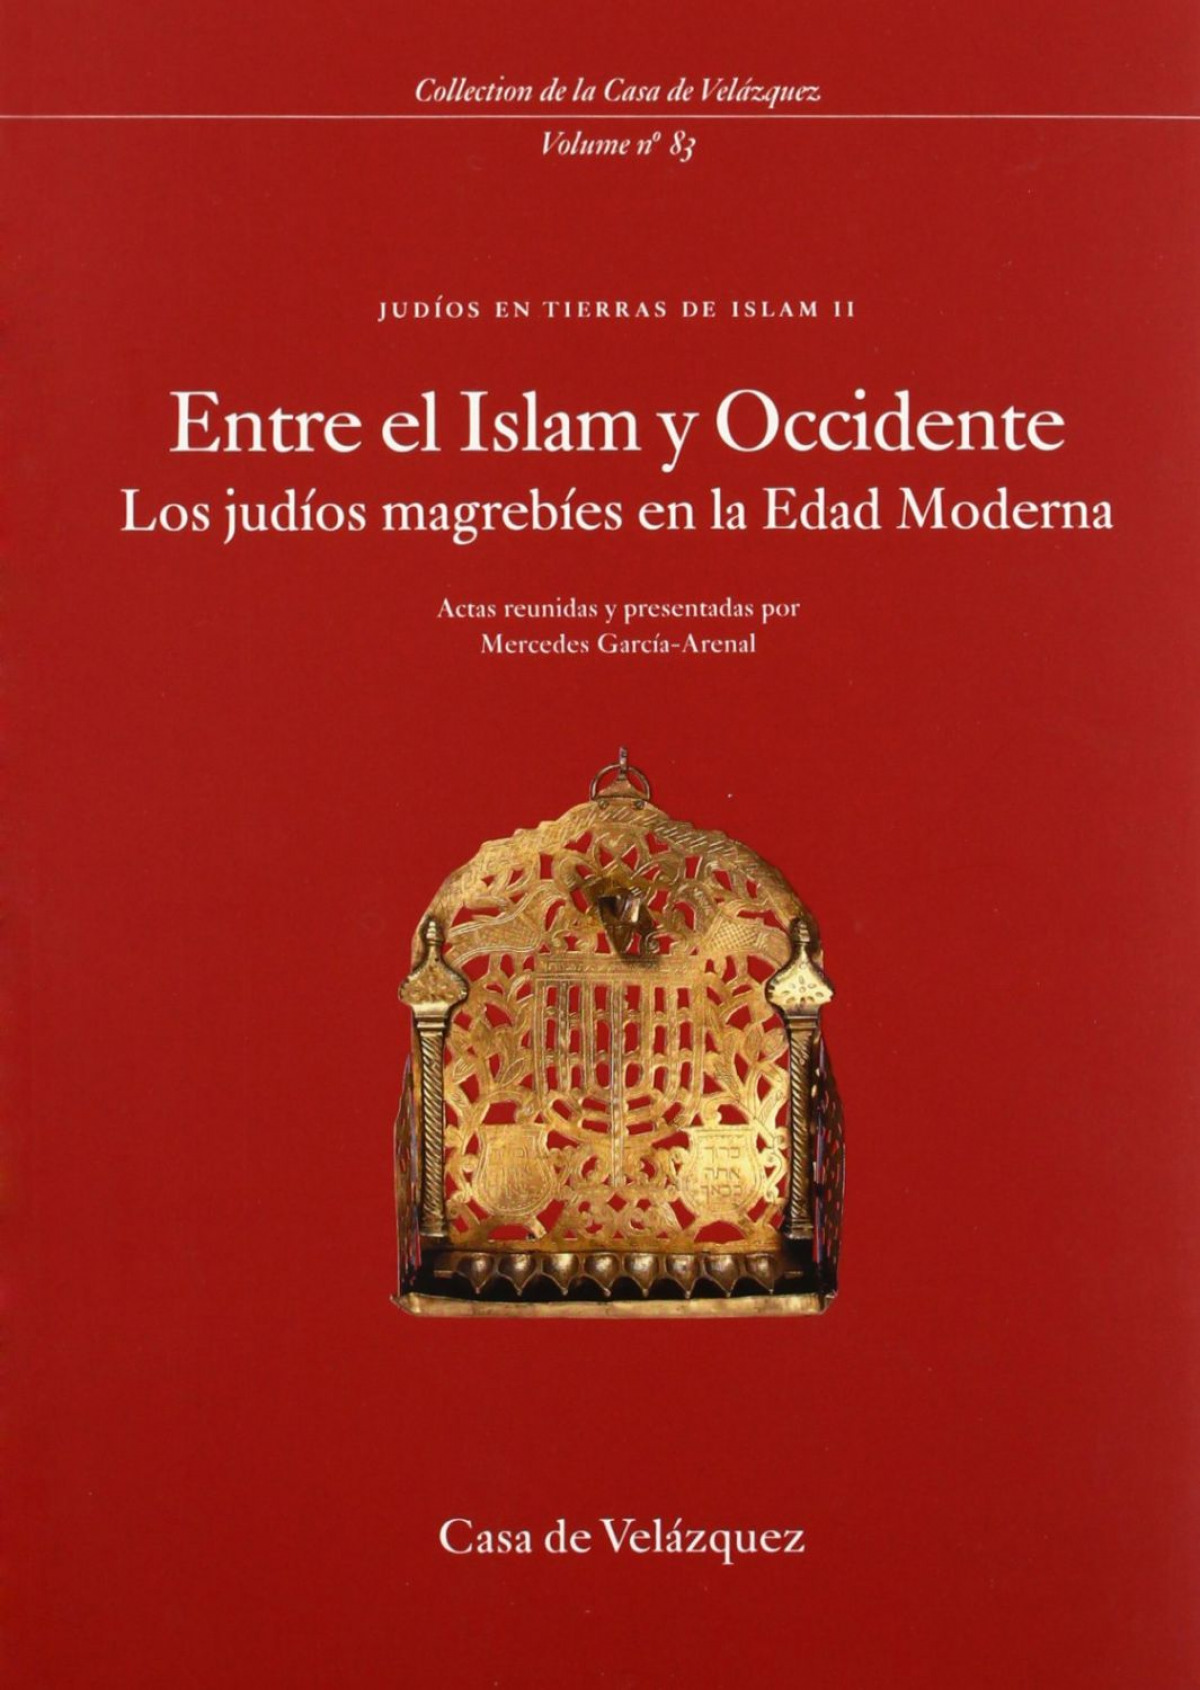 Judíos en tierras de Islam II, Entre el Islam y Occidente : - García-Arenal, Mercedes (ed. lit.)